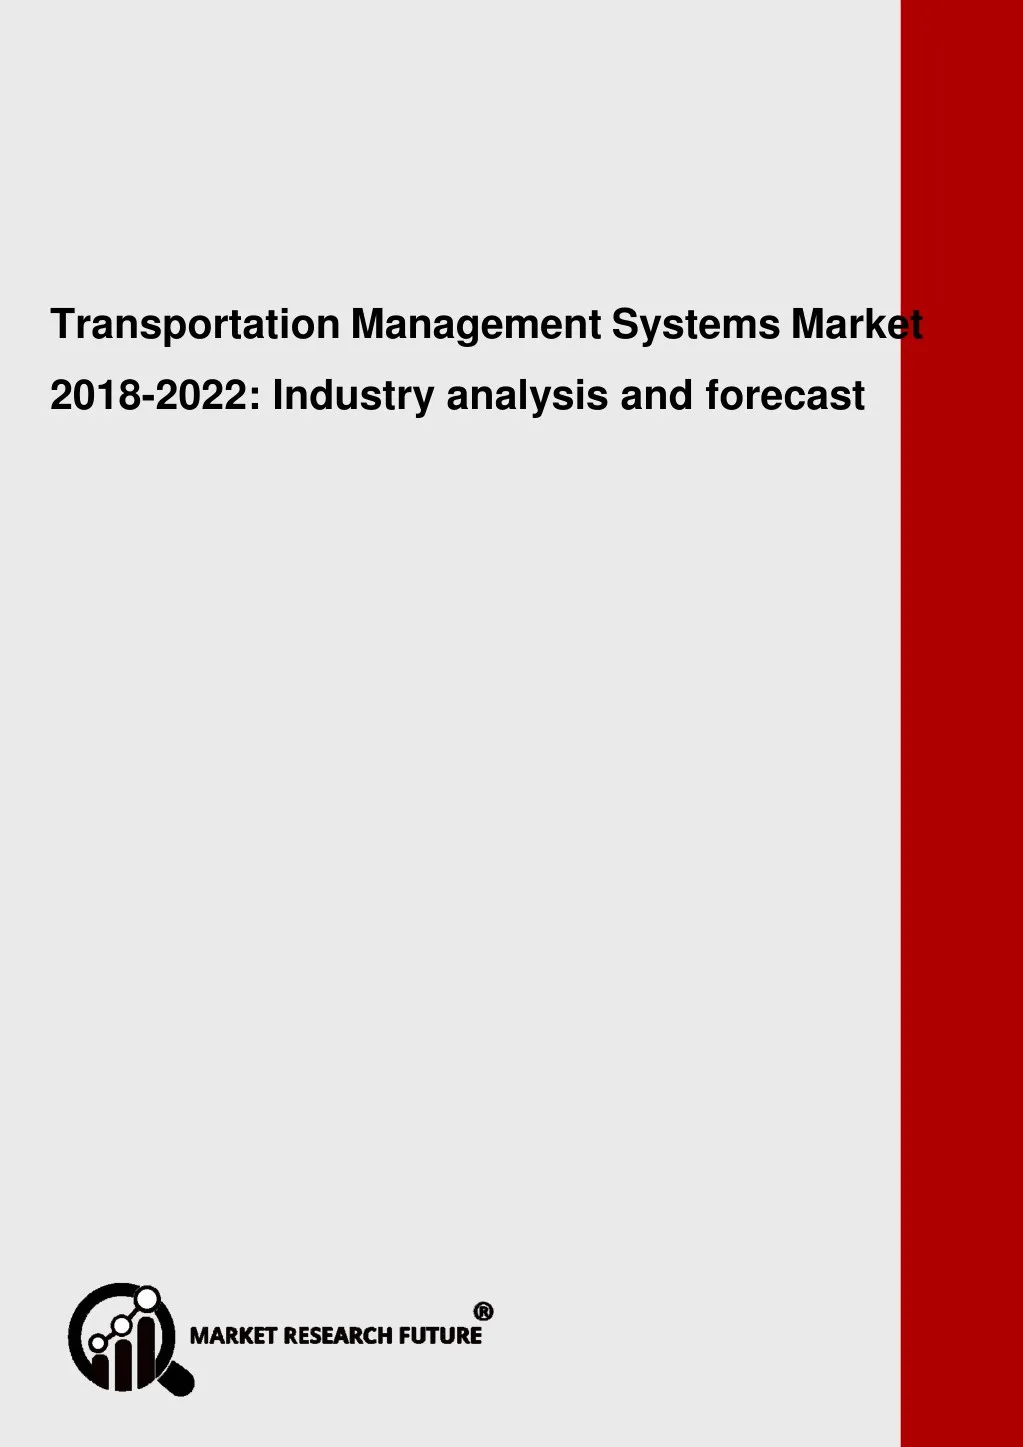 global transportation management systems market